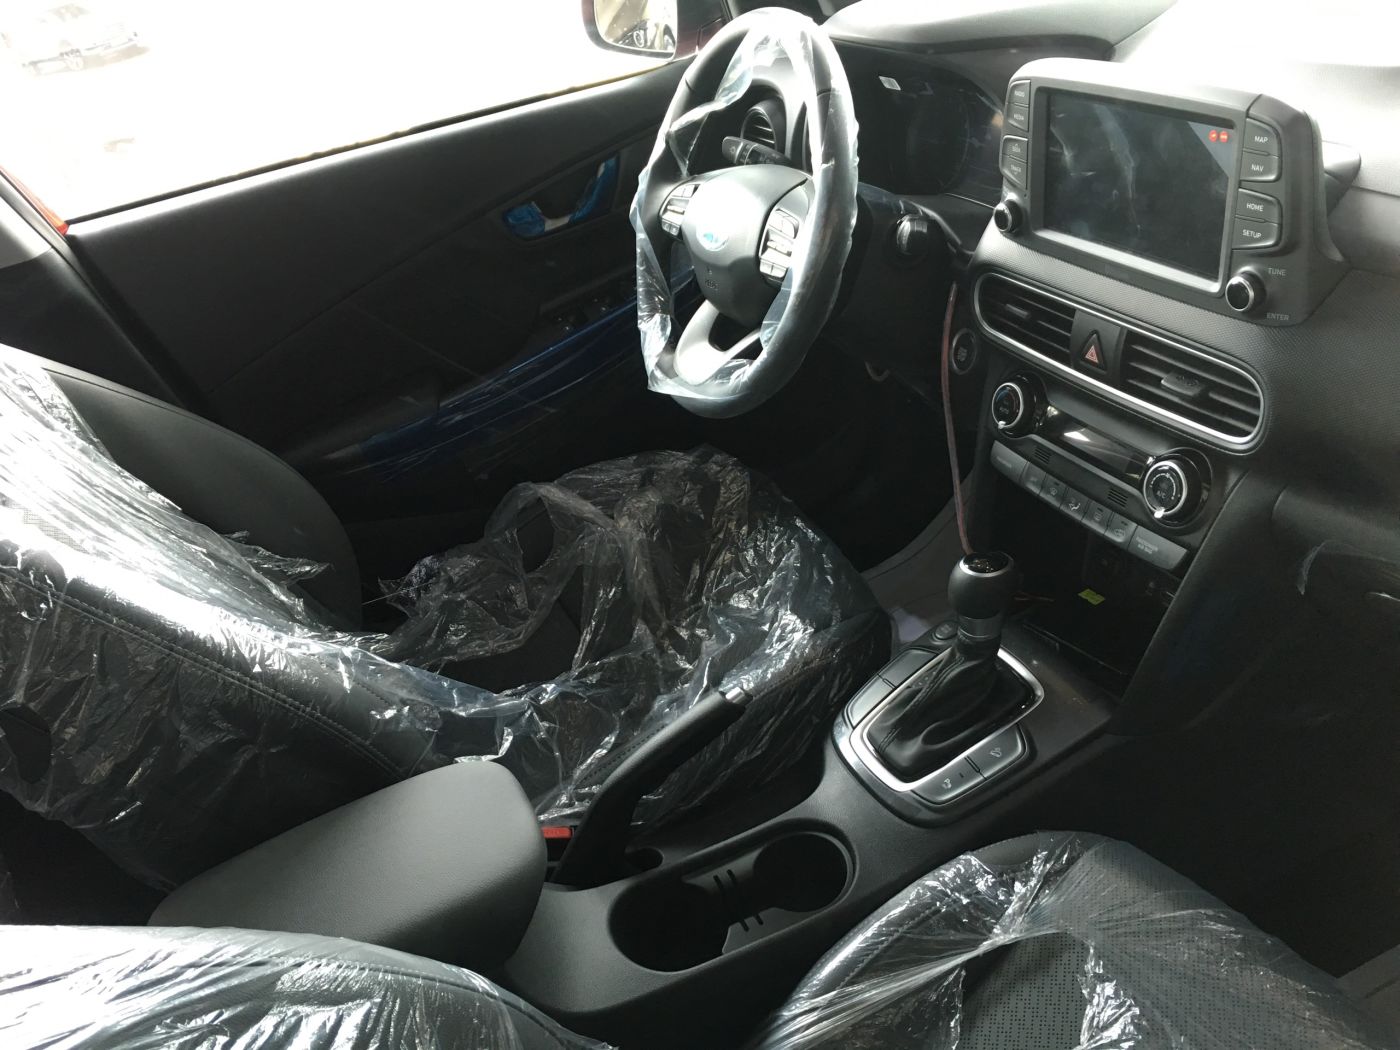 Hình ảnh nội thất xe Hyundai Bình Dương 01